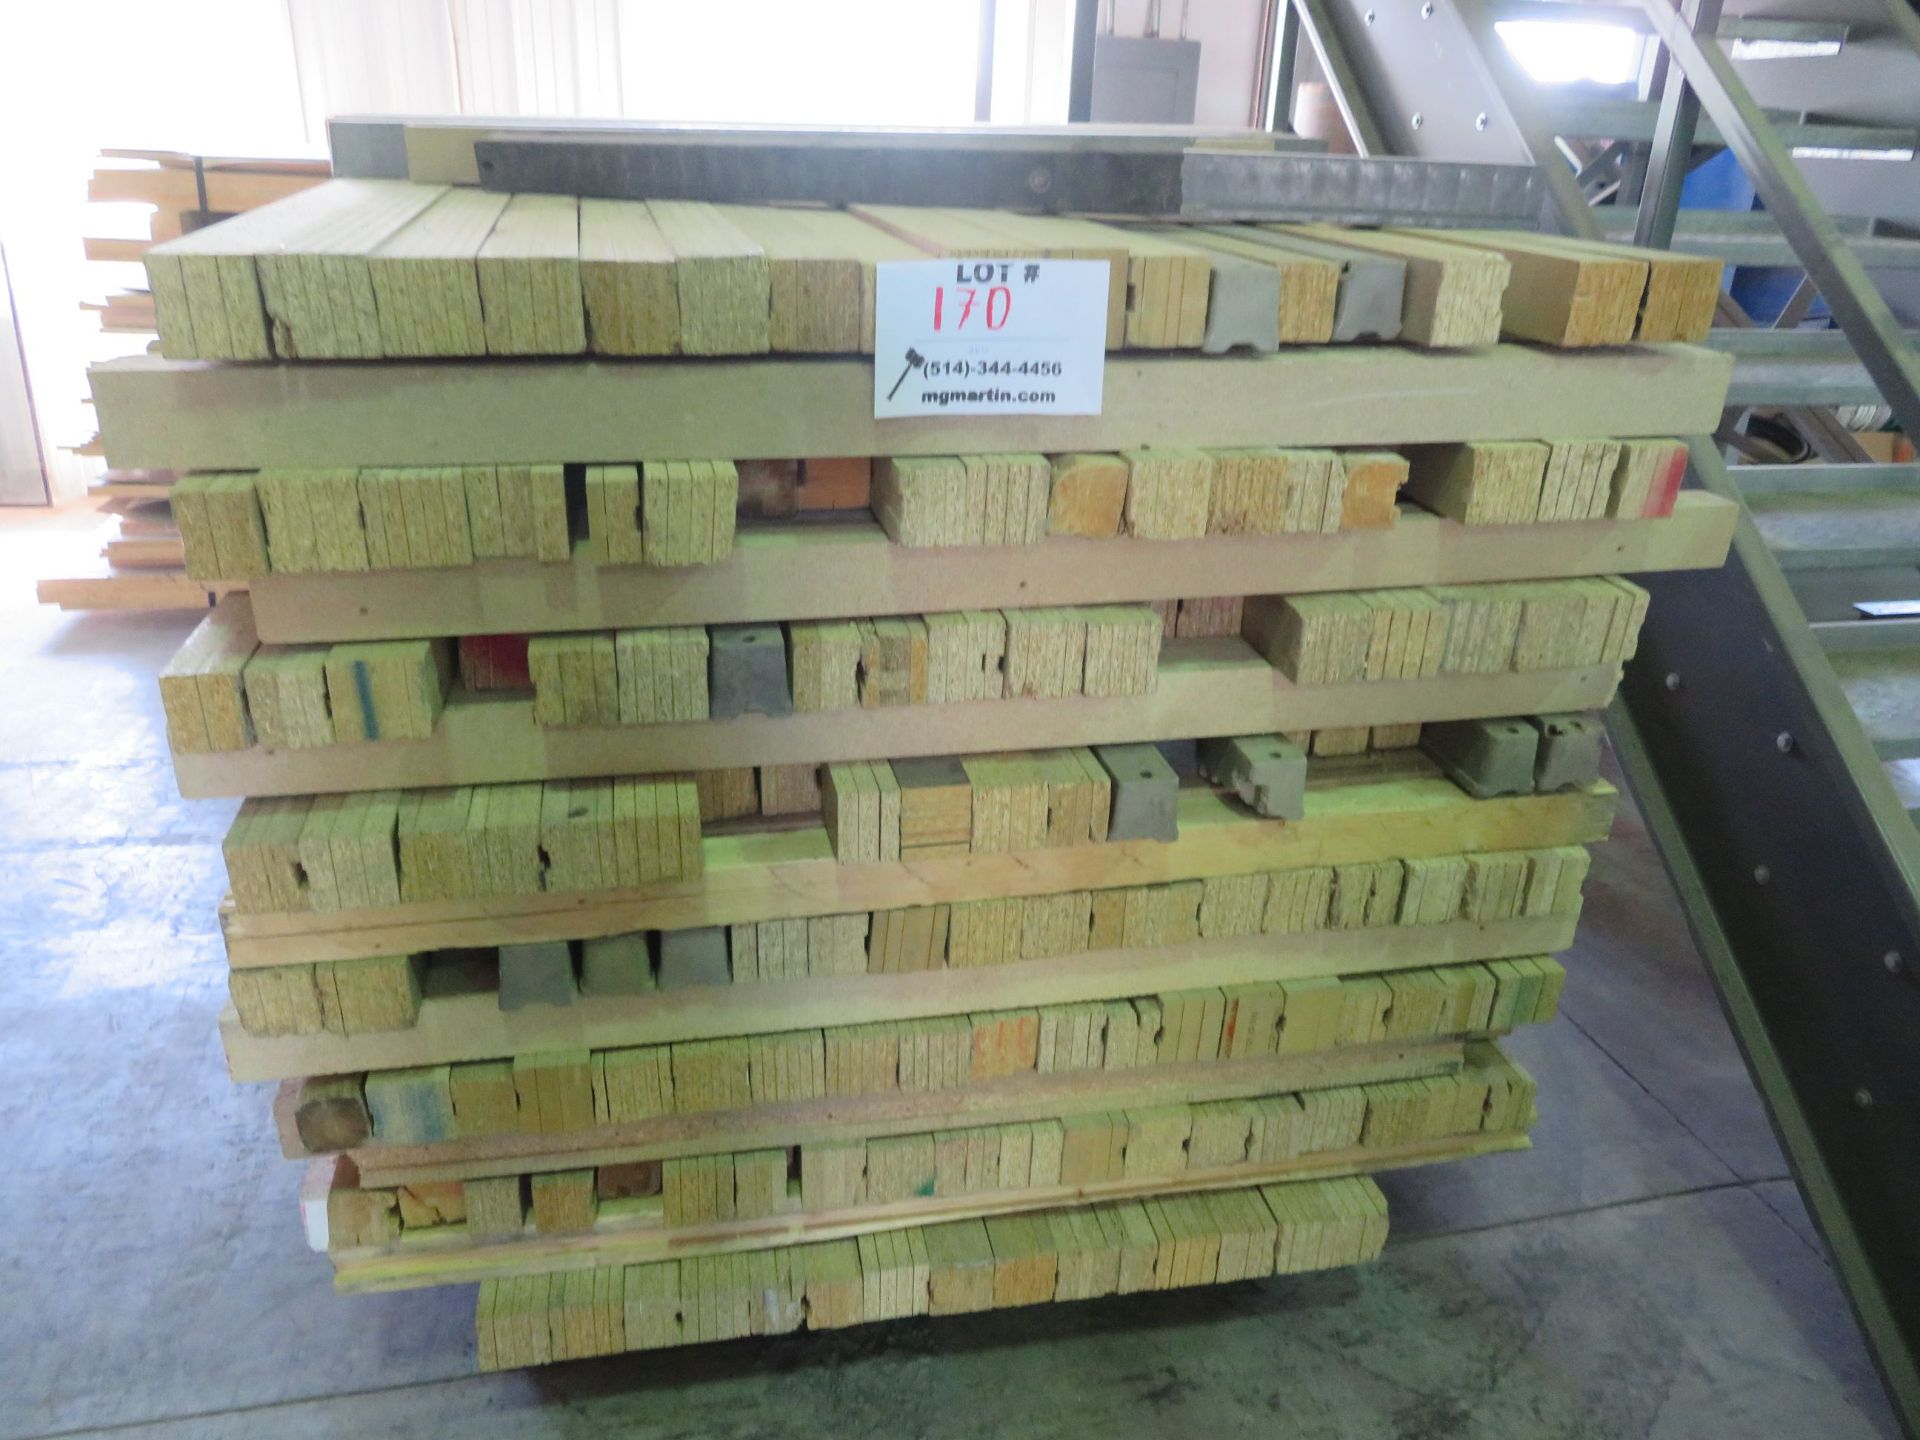 LOT including wood blocks (qty 260)